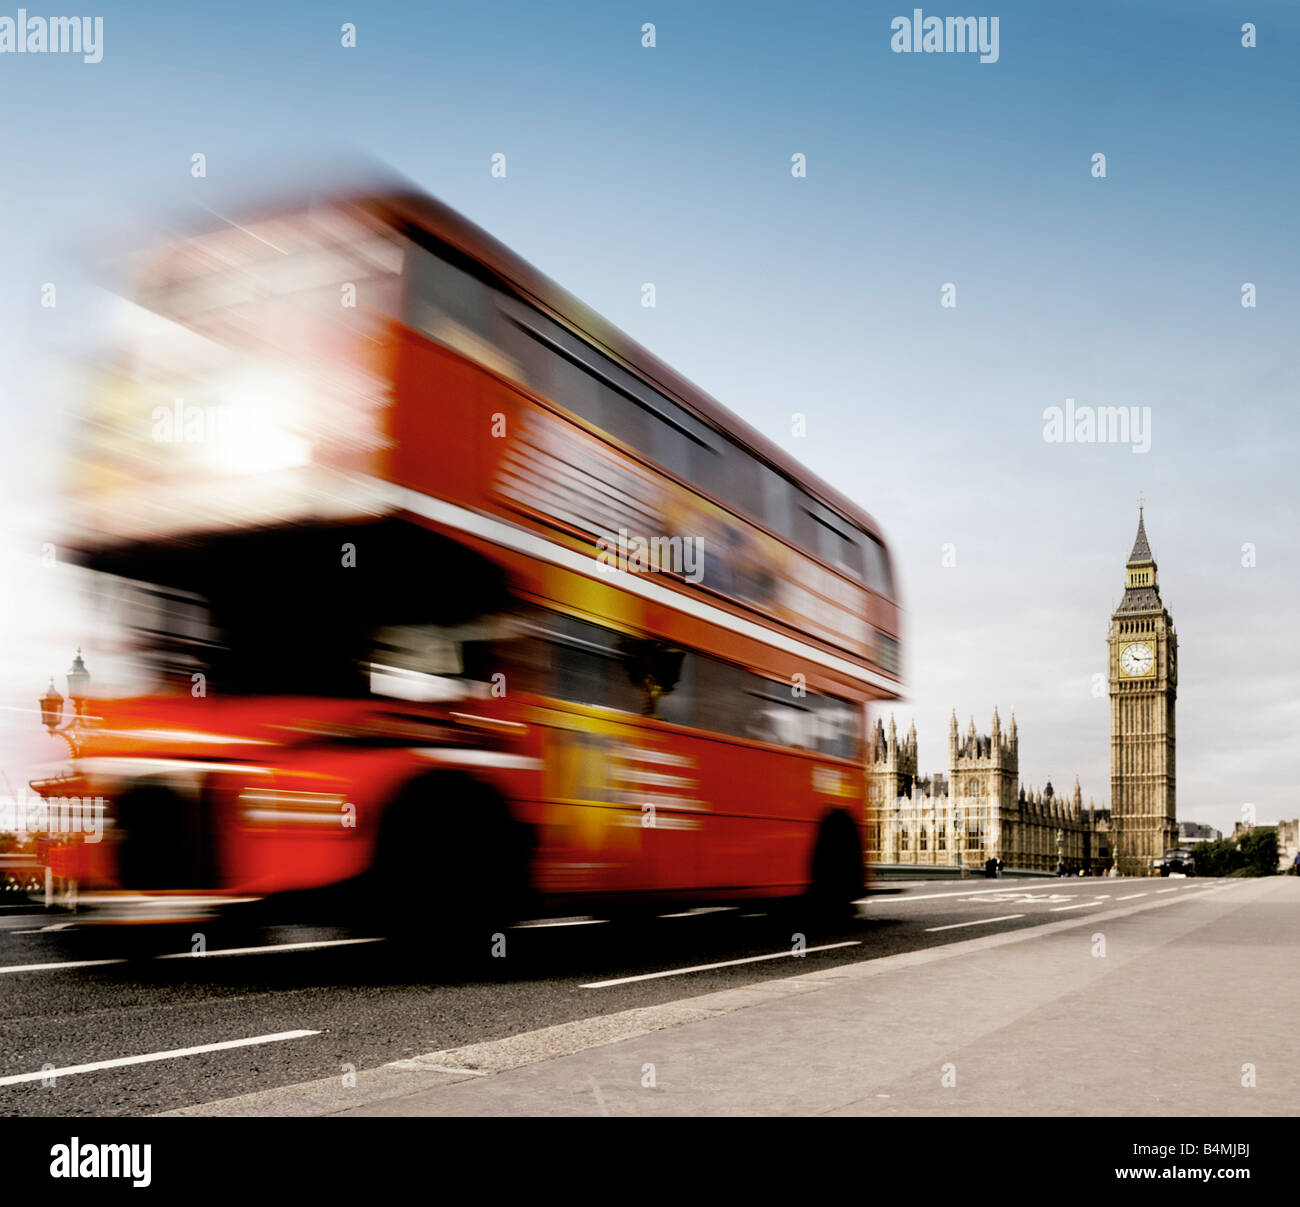 Einem roten Londoner Bus auf Westminster Bridge, mit Big Ben im Hintergrund Stockfoto